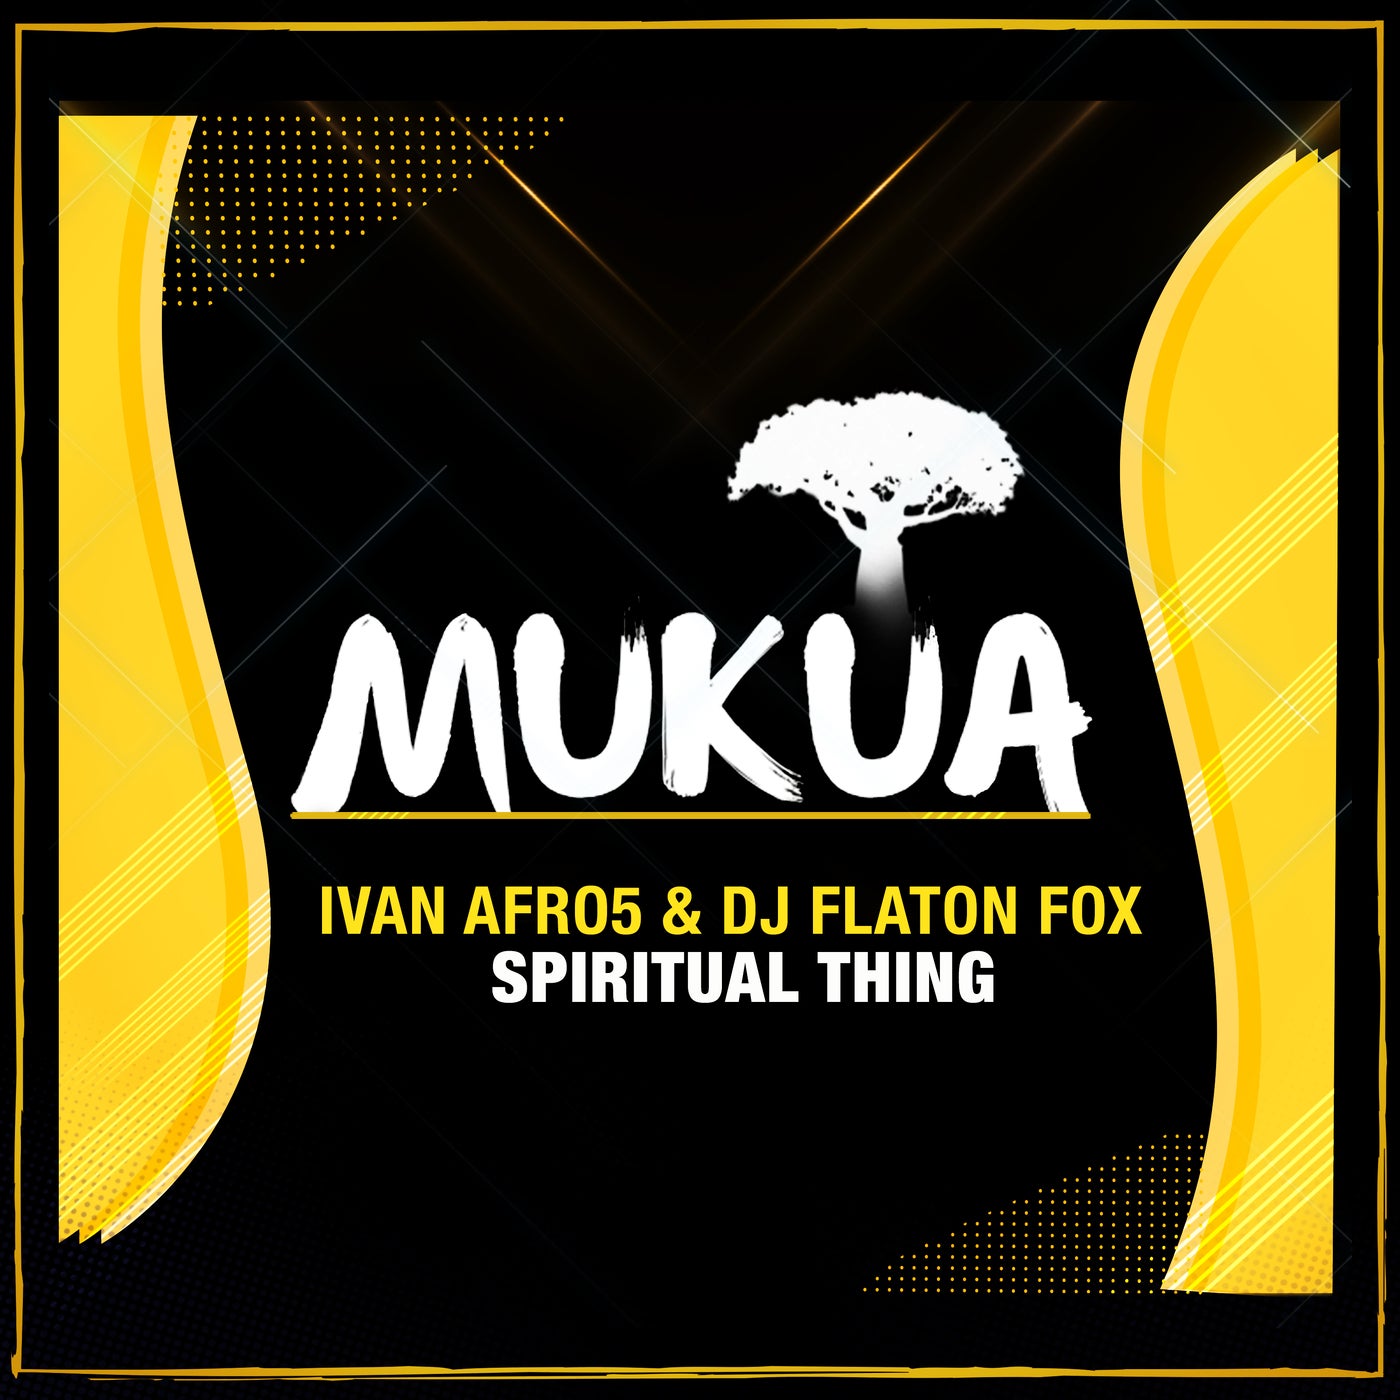 DJ Flaton Fox, Ivan Afro5 - Spiritual Thing [MK019]